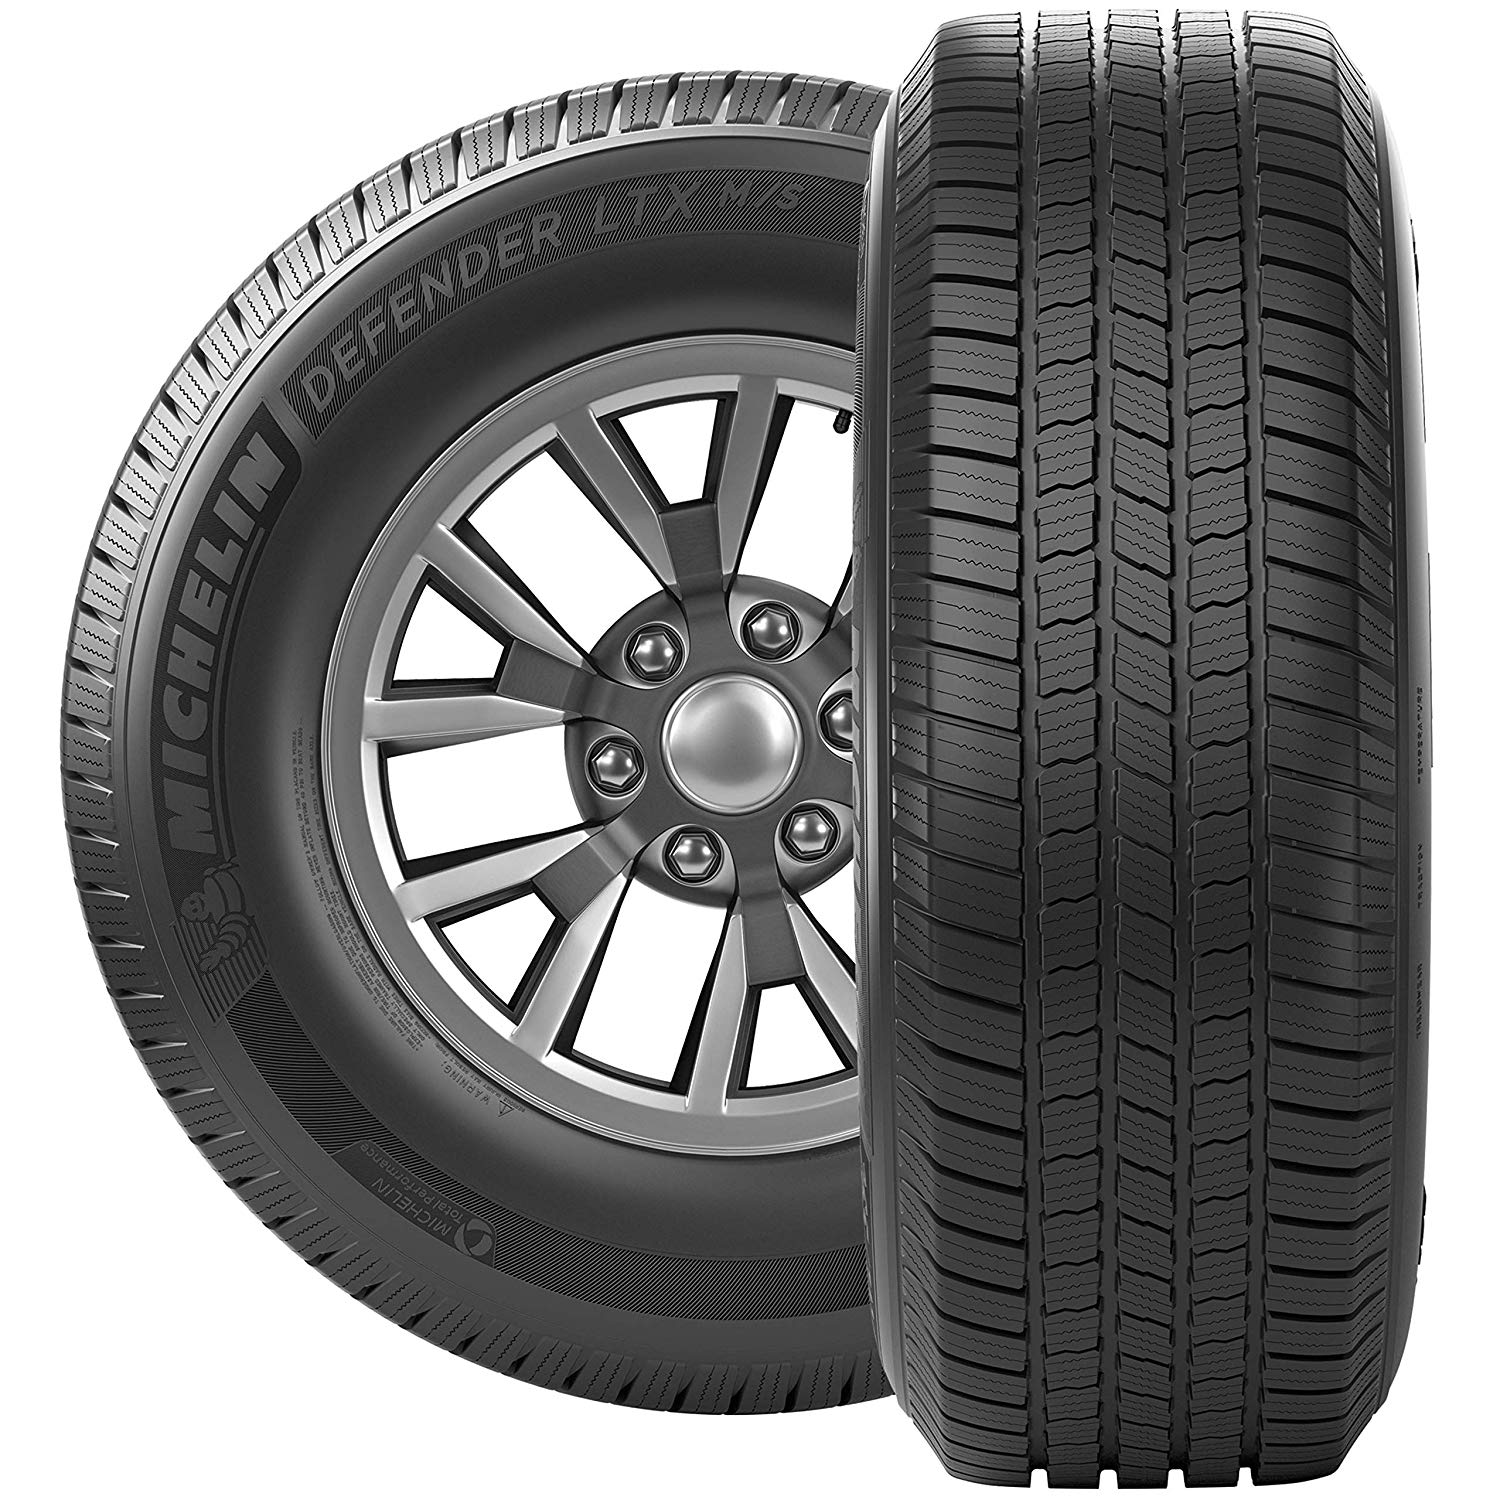 Michelin Defender LTX M/S All-Season 245/60R18 105H Tire - image 3 of 23